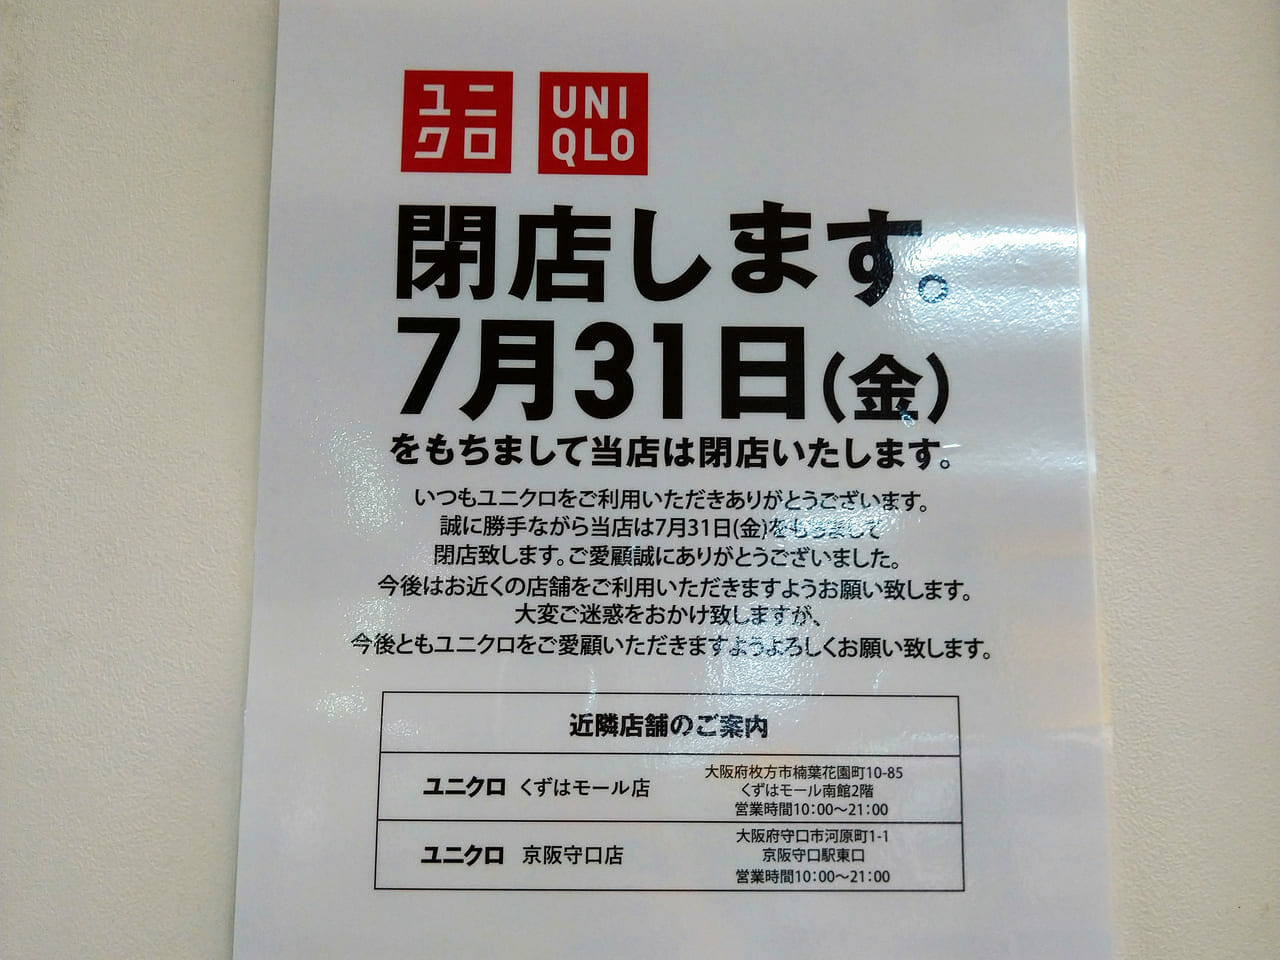 枚方市 樟葉駅構内にあるユニクロが閉店を発表 7月31日まで 号外net 枚方市